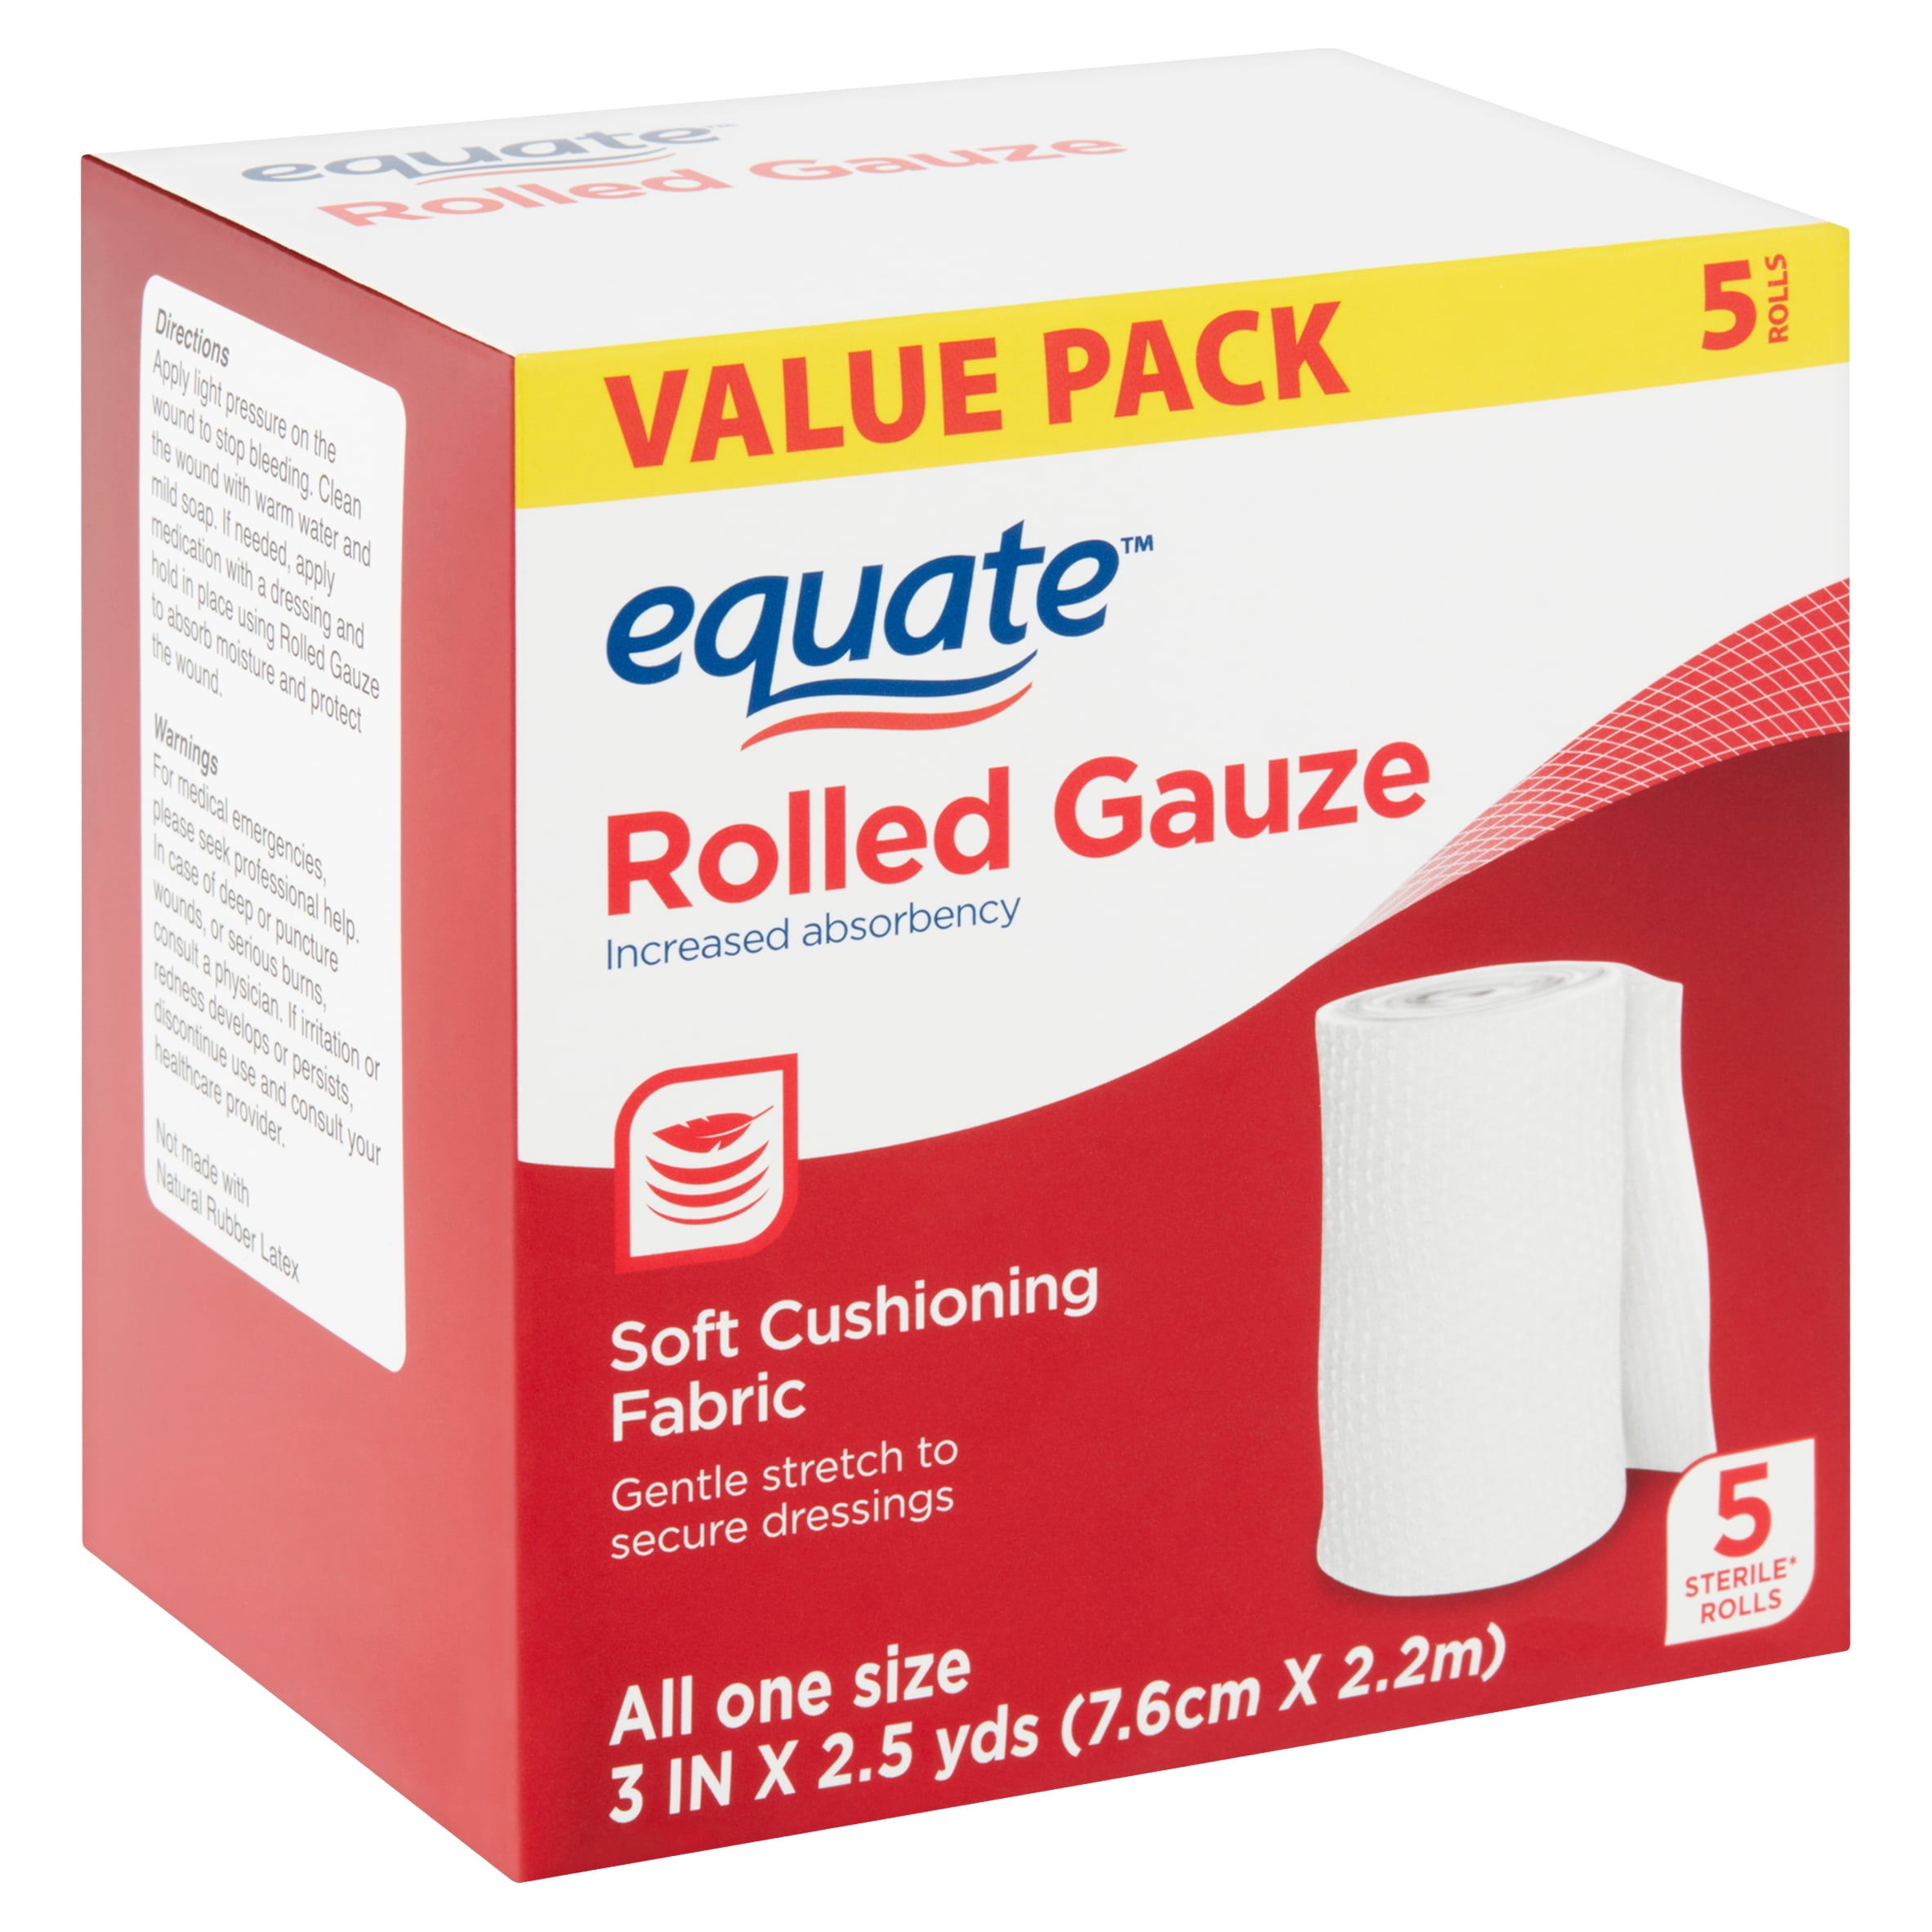 Equate Rolled Gauze Value Pack 5 Count Walmart Com Walmart Com